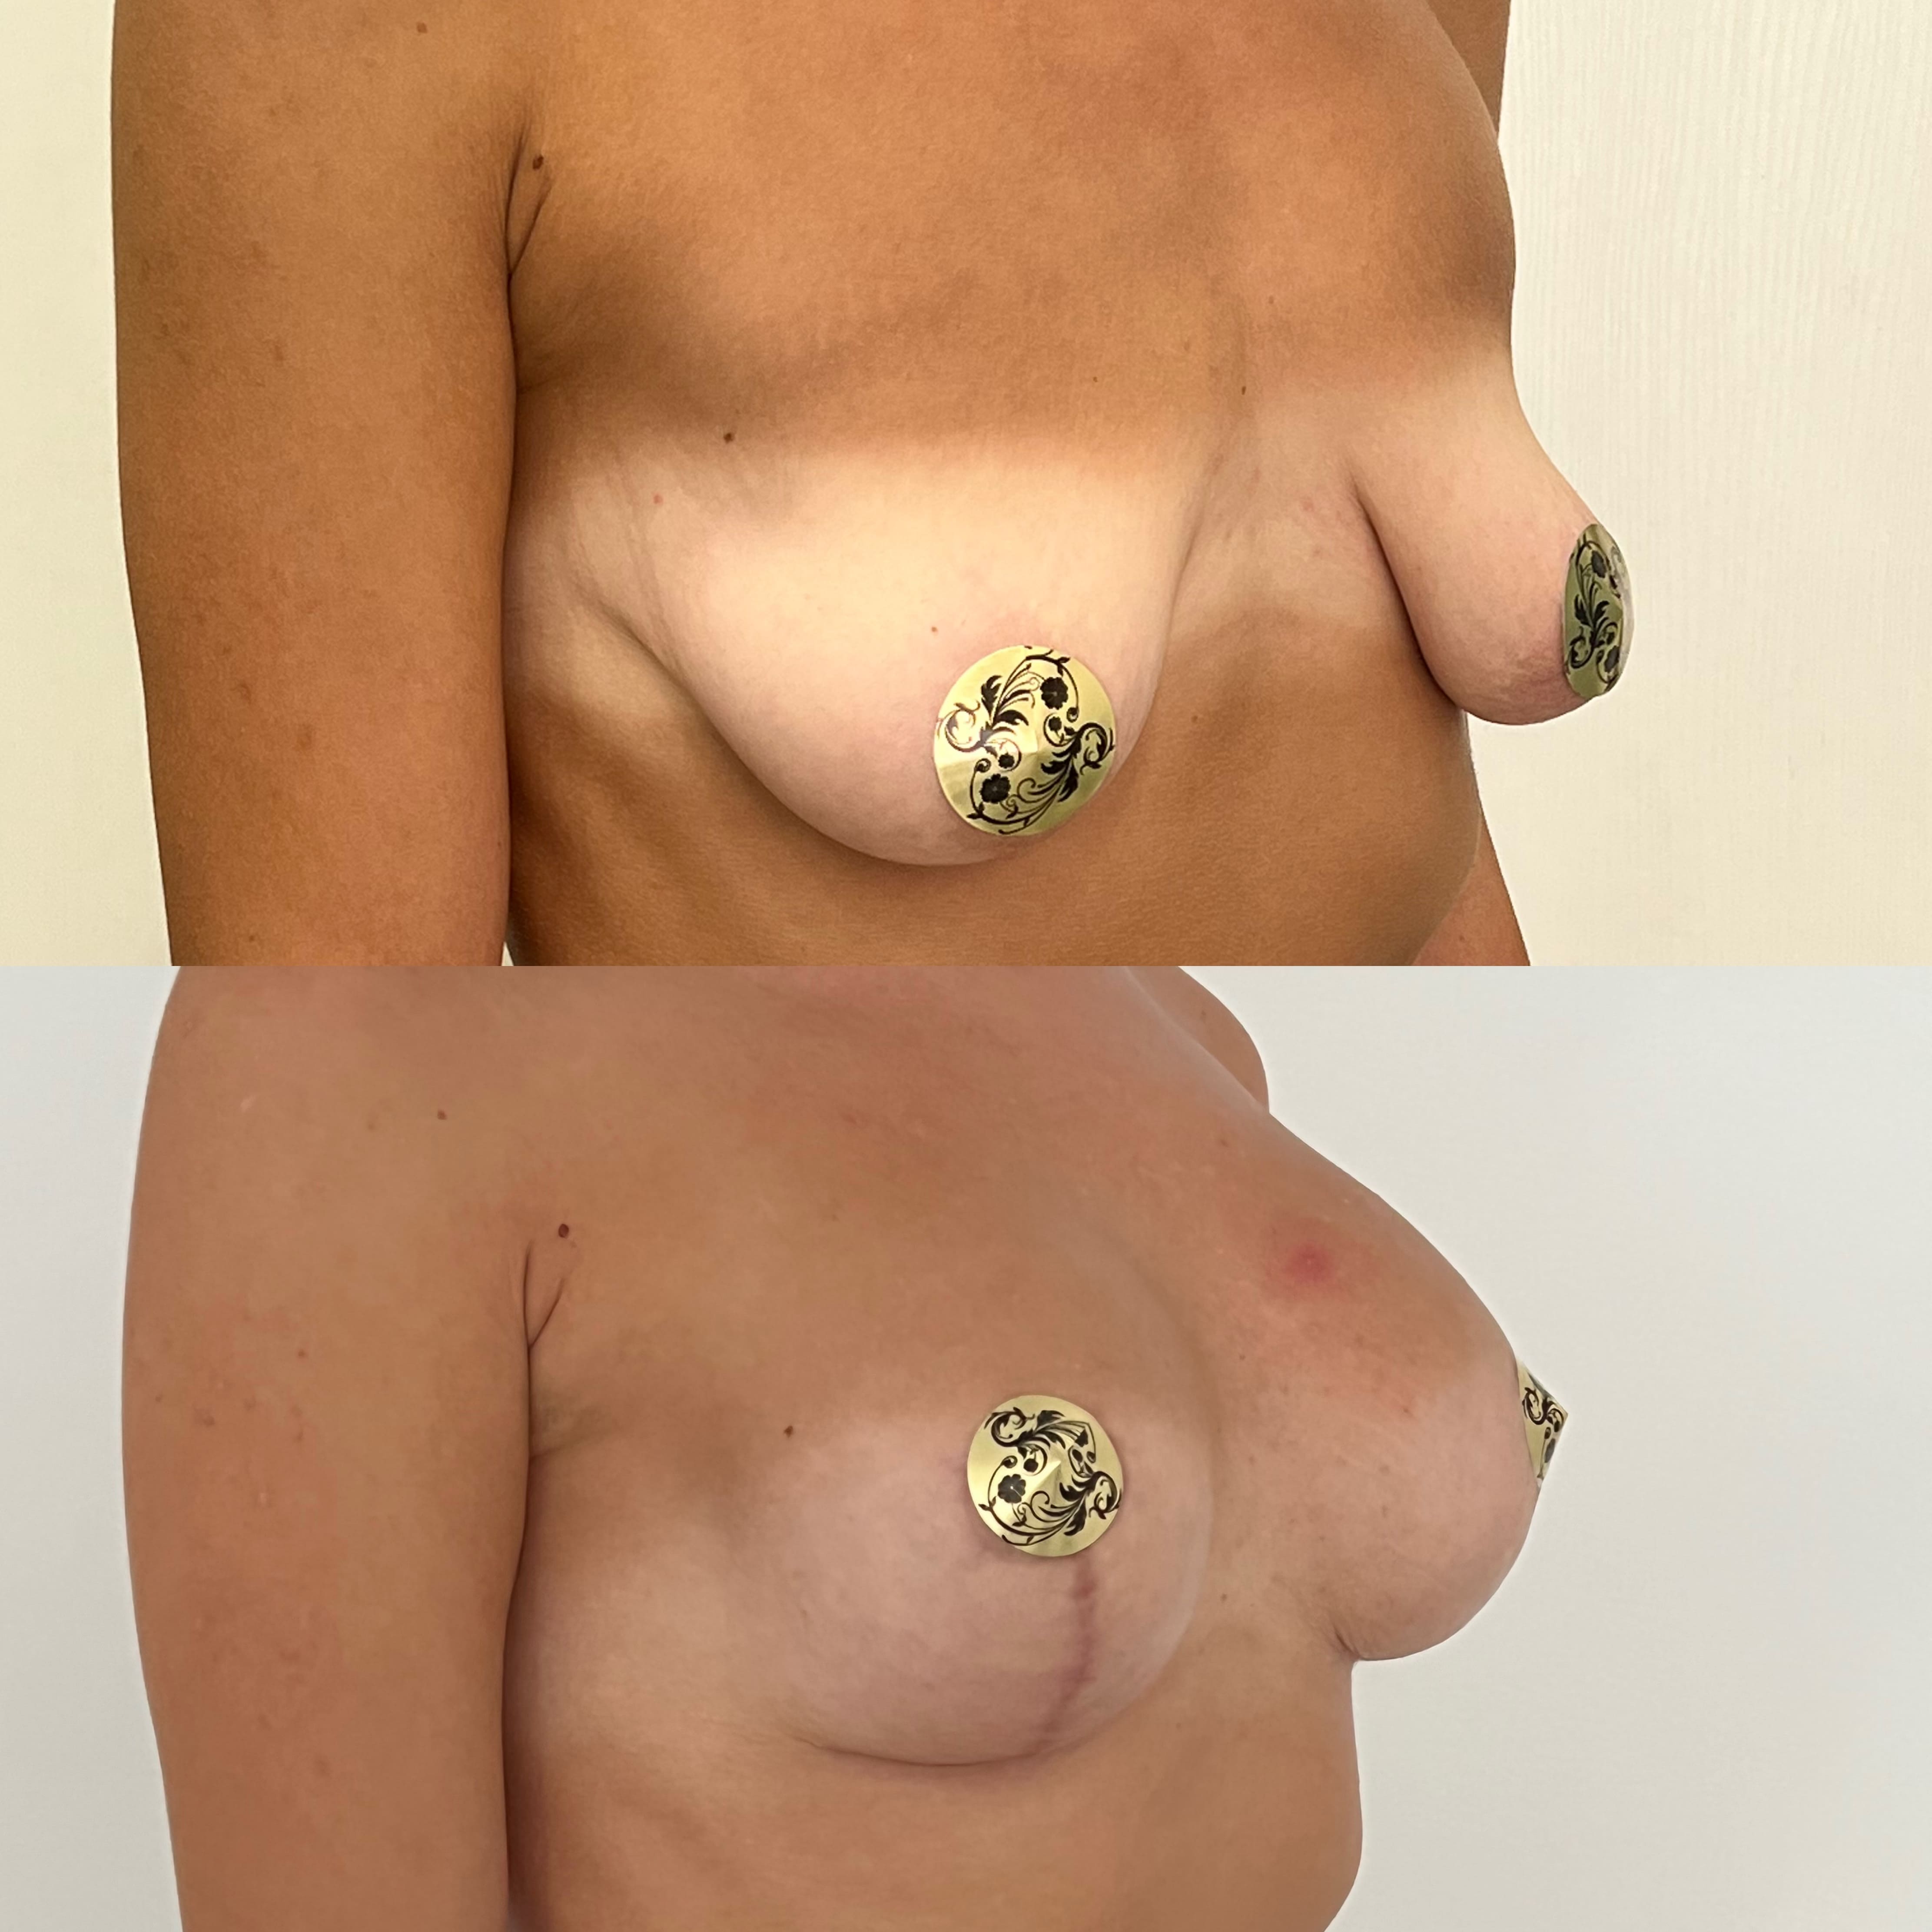 Периареолярный доступ увеличения груди «под ключ» - фото до и после